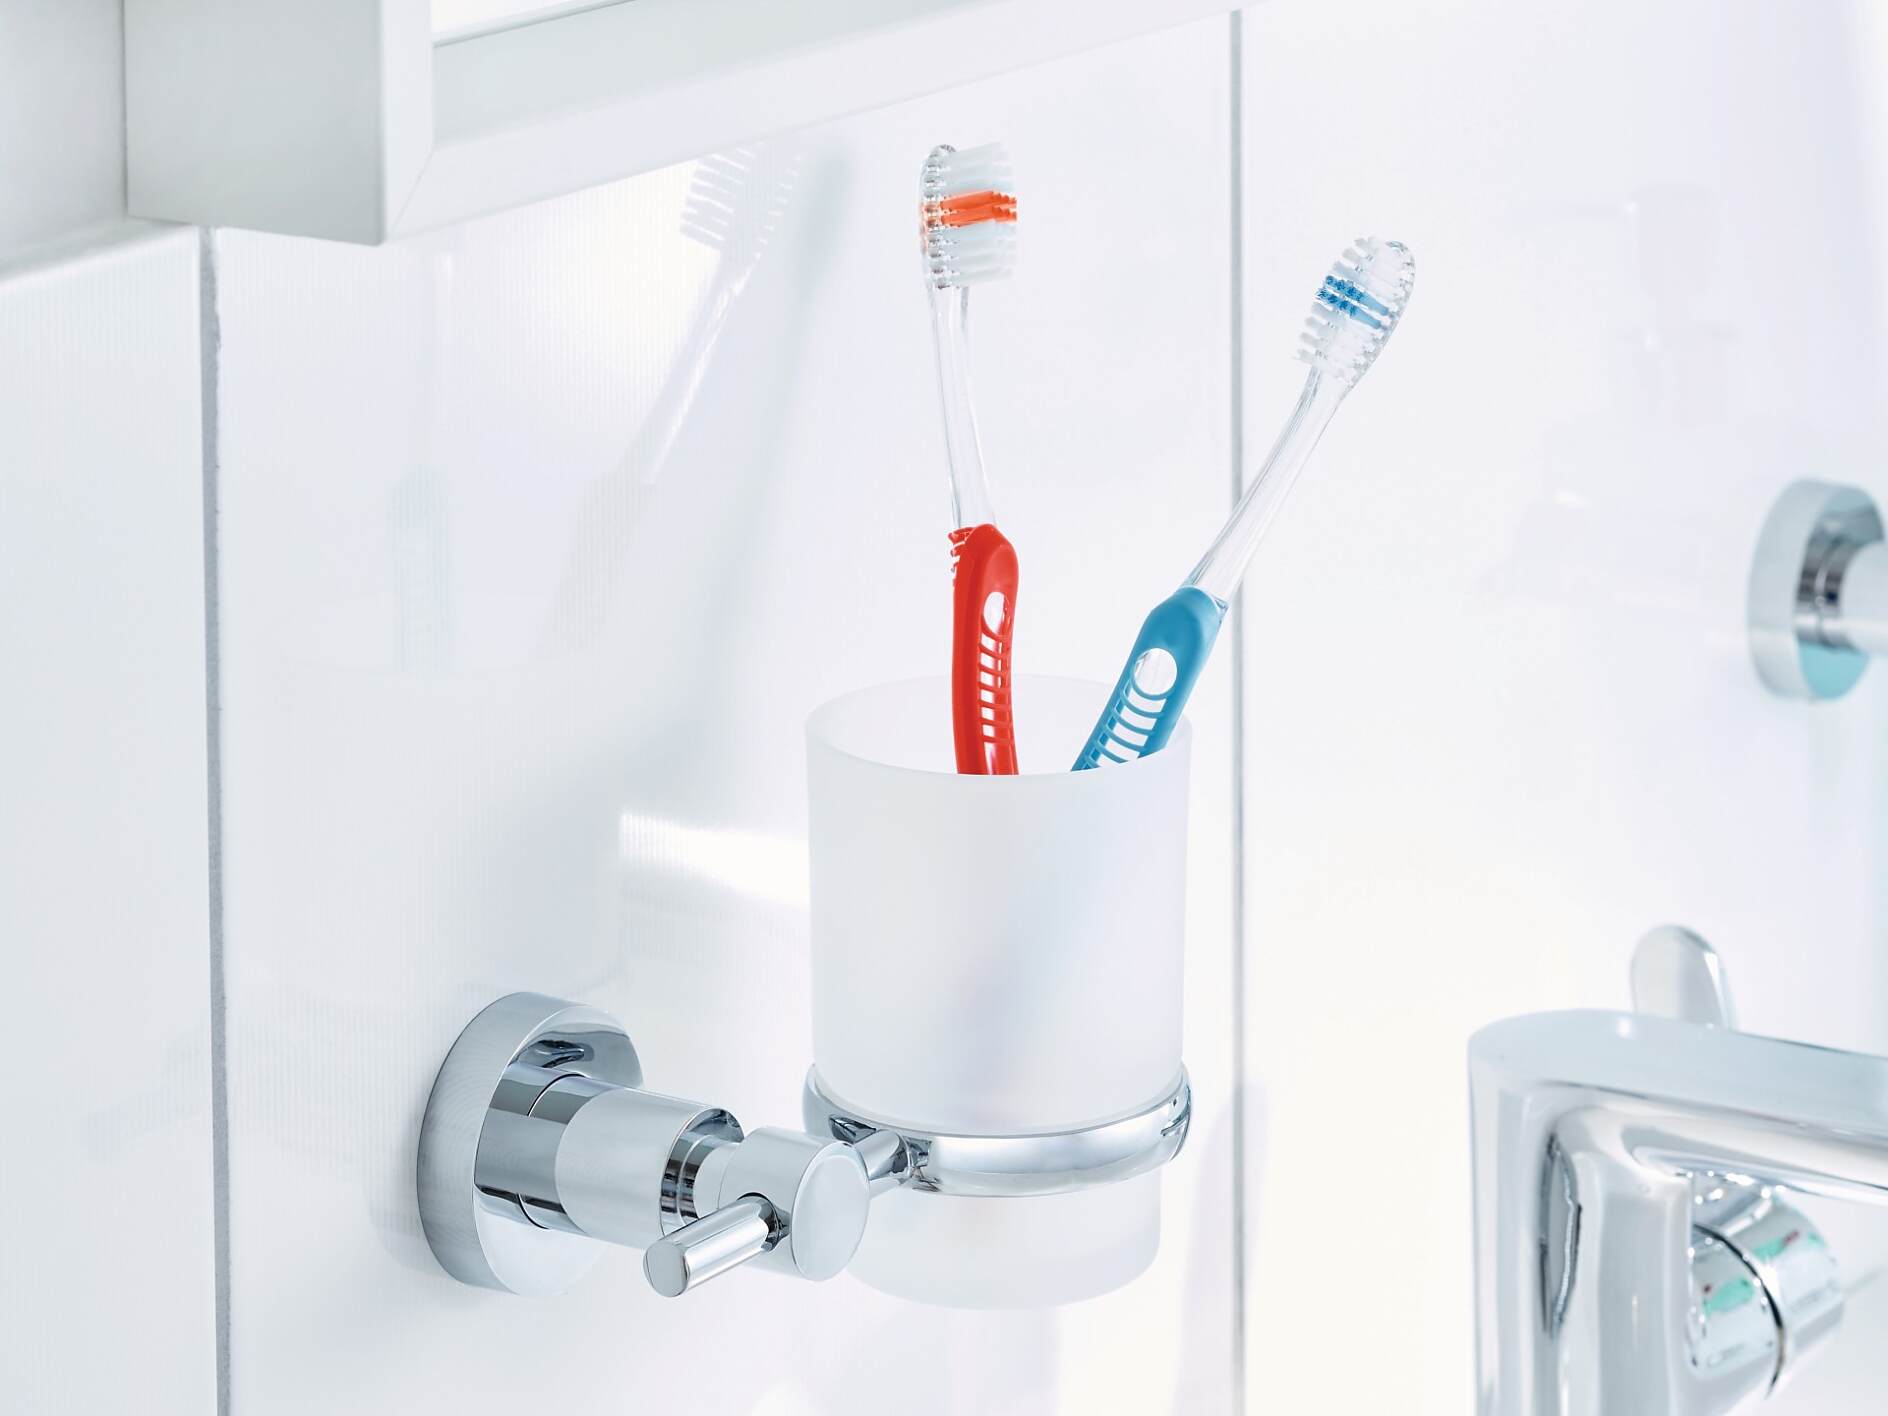 DAX - Soporte para cepillo de dientes de doble vaso para baño, acero i